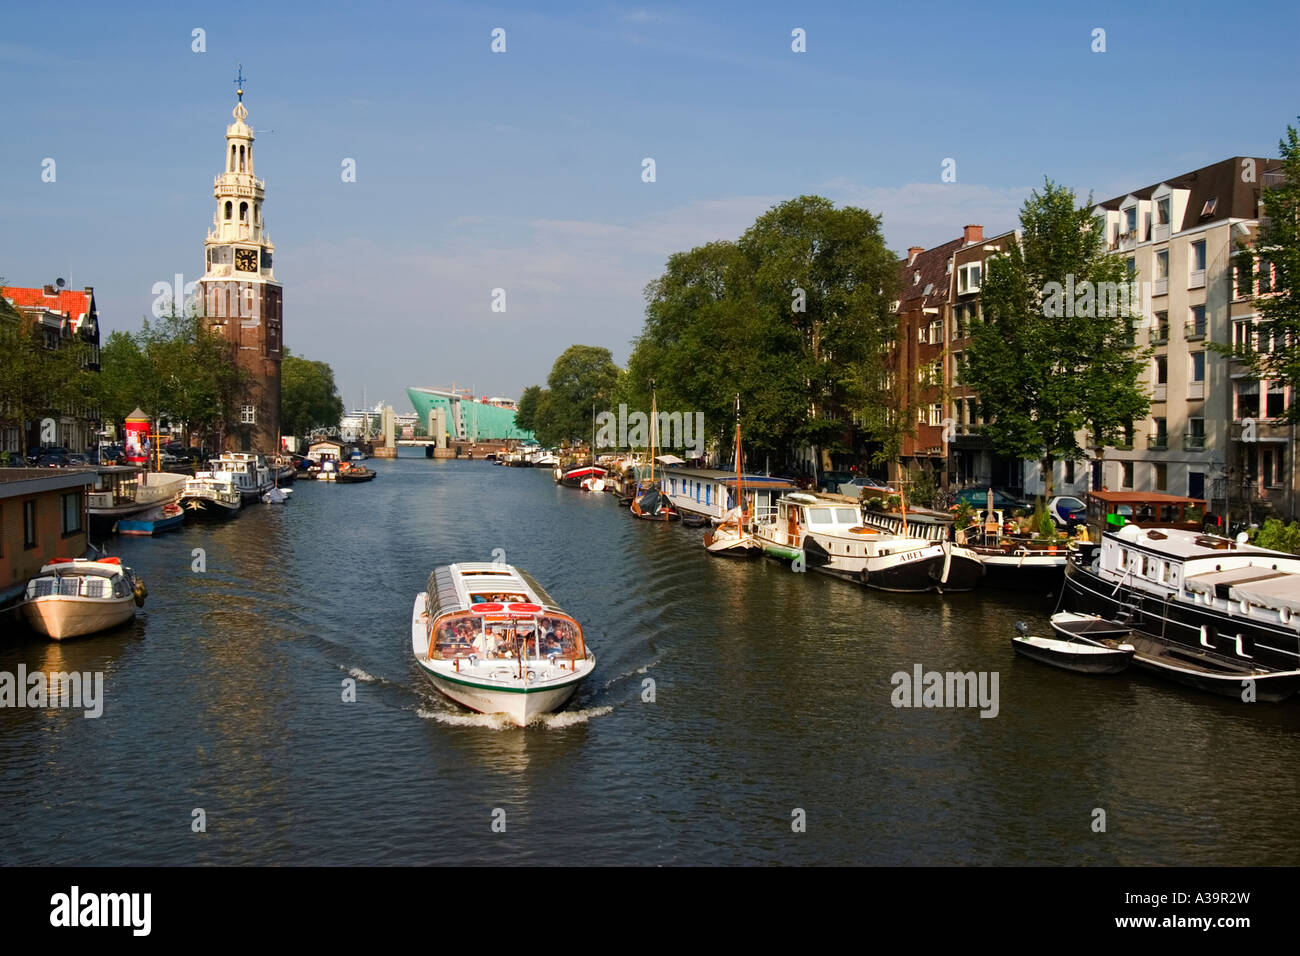 Amsterdam Oude Schans Motelbaans toren canal boat Stock Photo